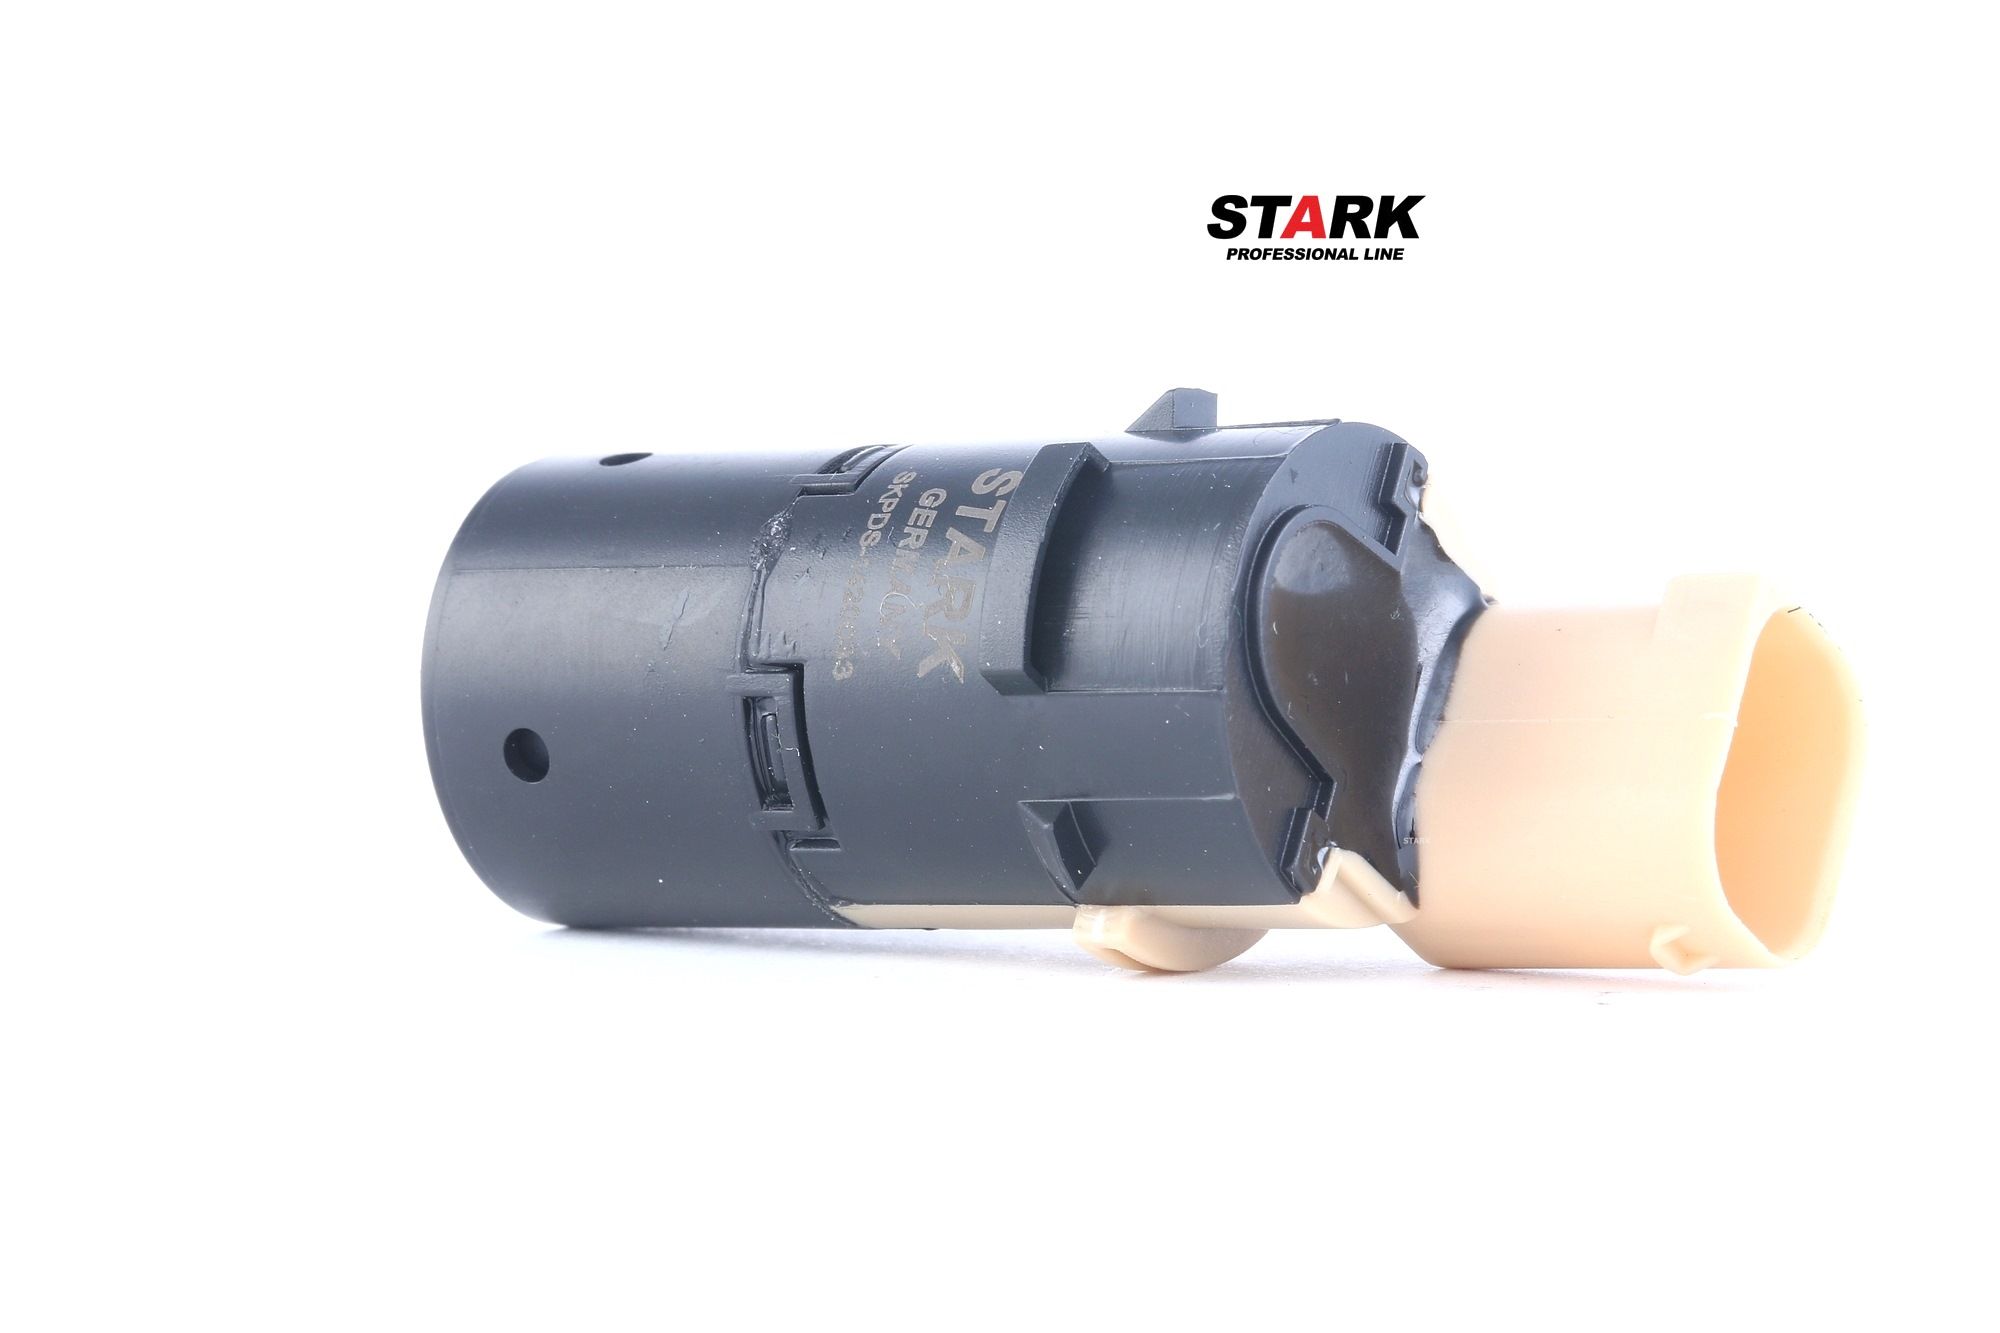 STARK SKPDS-1420033 Parking sensor Rear, Ultrasonic Sensor